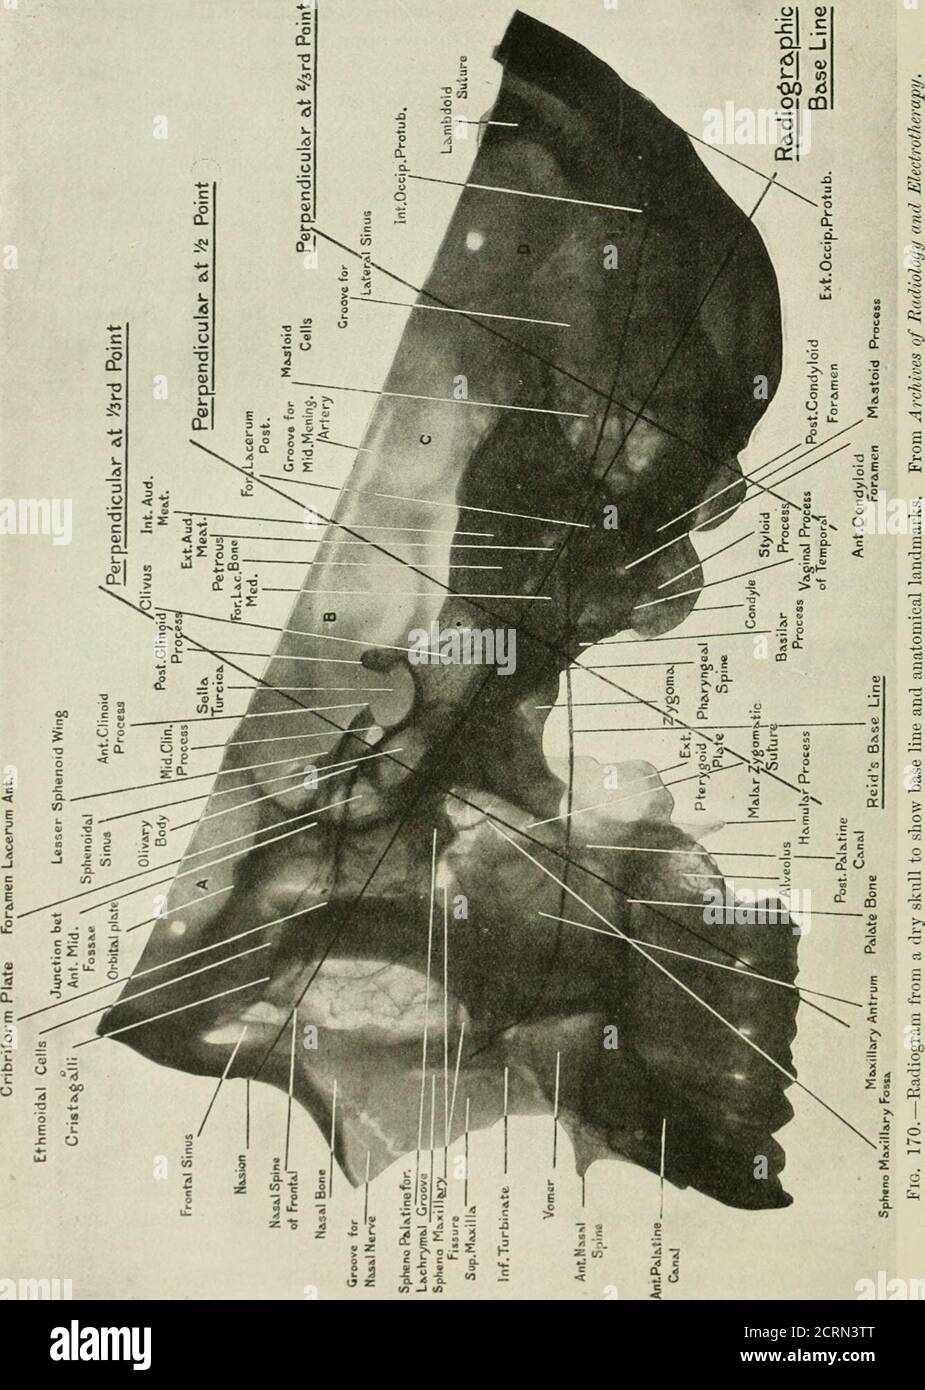 . Radiografia e radioterapeutica . sure di Rolando, e sotto la tonalità di base con il margine posteriore del ramus ascendente della mandibola inferiore. La perpendicolare alla distanza di due terzi bisetta la lobedel parietale del cervello. Queste tre linee dividono la testa in quattro zone che possono essere caleA, B, C, D, da prima all'indietro. La regione A contiene la fossa anteriore del cranio con la metà anteriore del lobo frontale, le orbite e le ossa facciali, ad eccezione dei rami ascendenti delle mascelle inferiori e delle ossa palate. La regione B contiene il corpo dello sfenoide e il maggiore Foto Stock